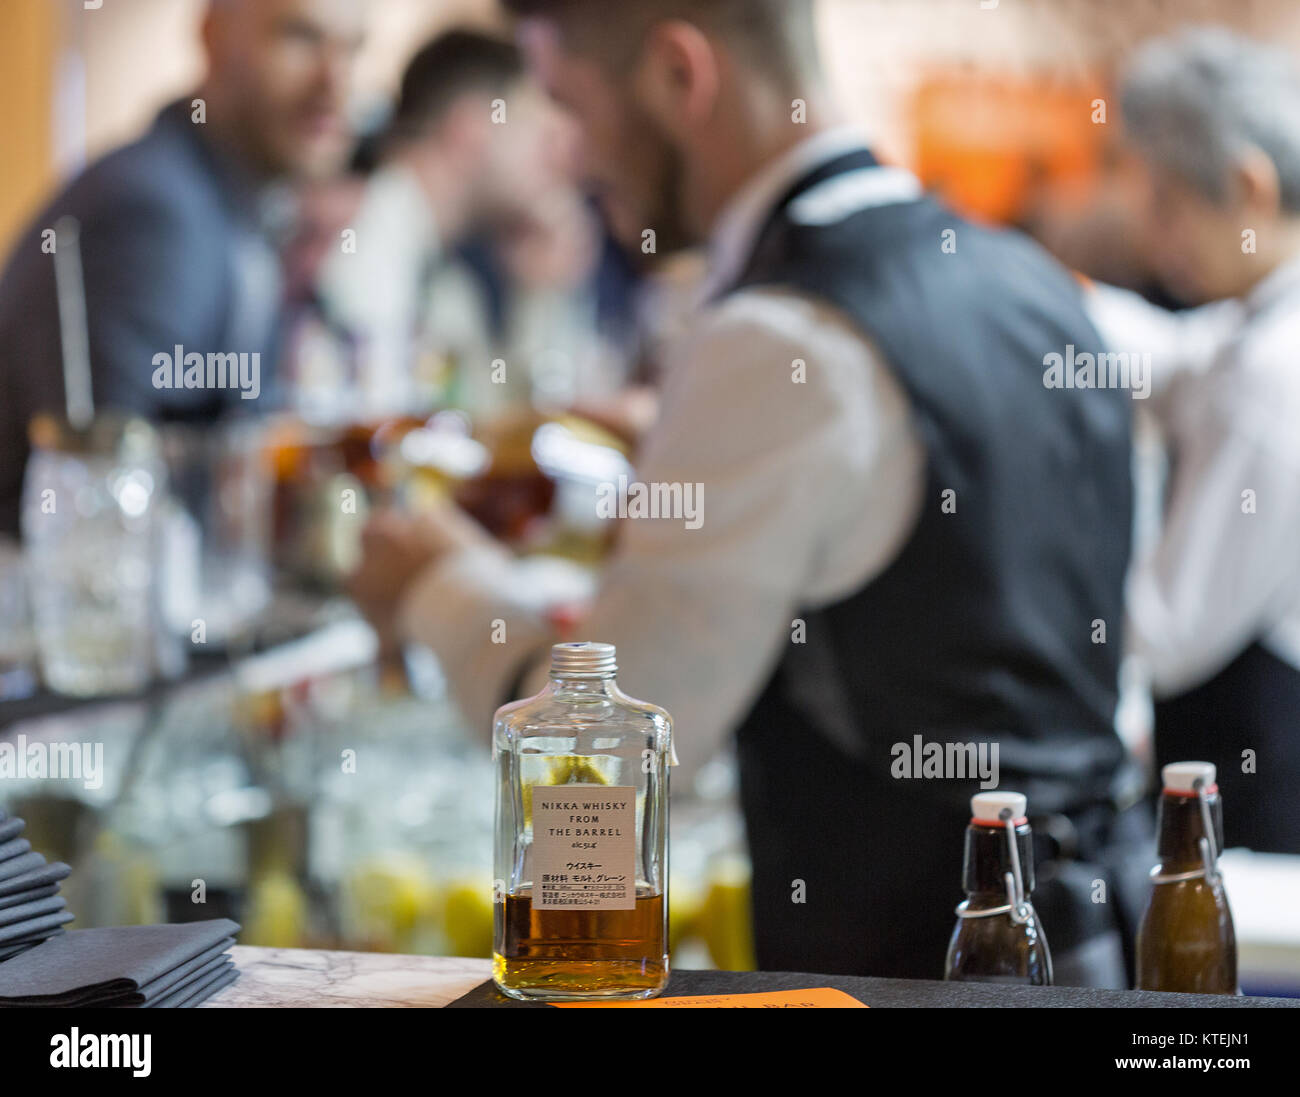 KIEV, UCRAINA - 25 novembre 2017: Nikka Whisky da canna distilleria giapponese la bottiglia nella parte anteriore del barista il lavoro presso il bar a 3 W ucraino Foto Stock